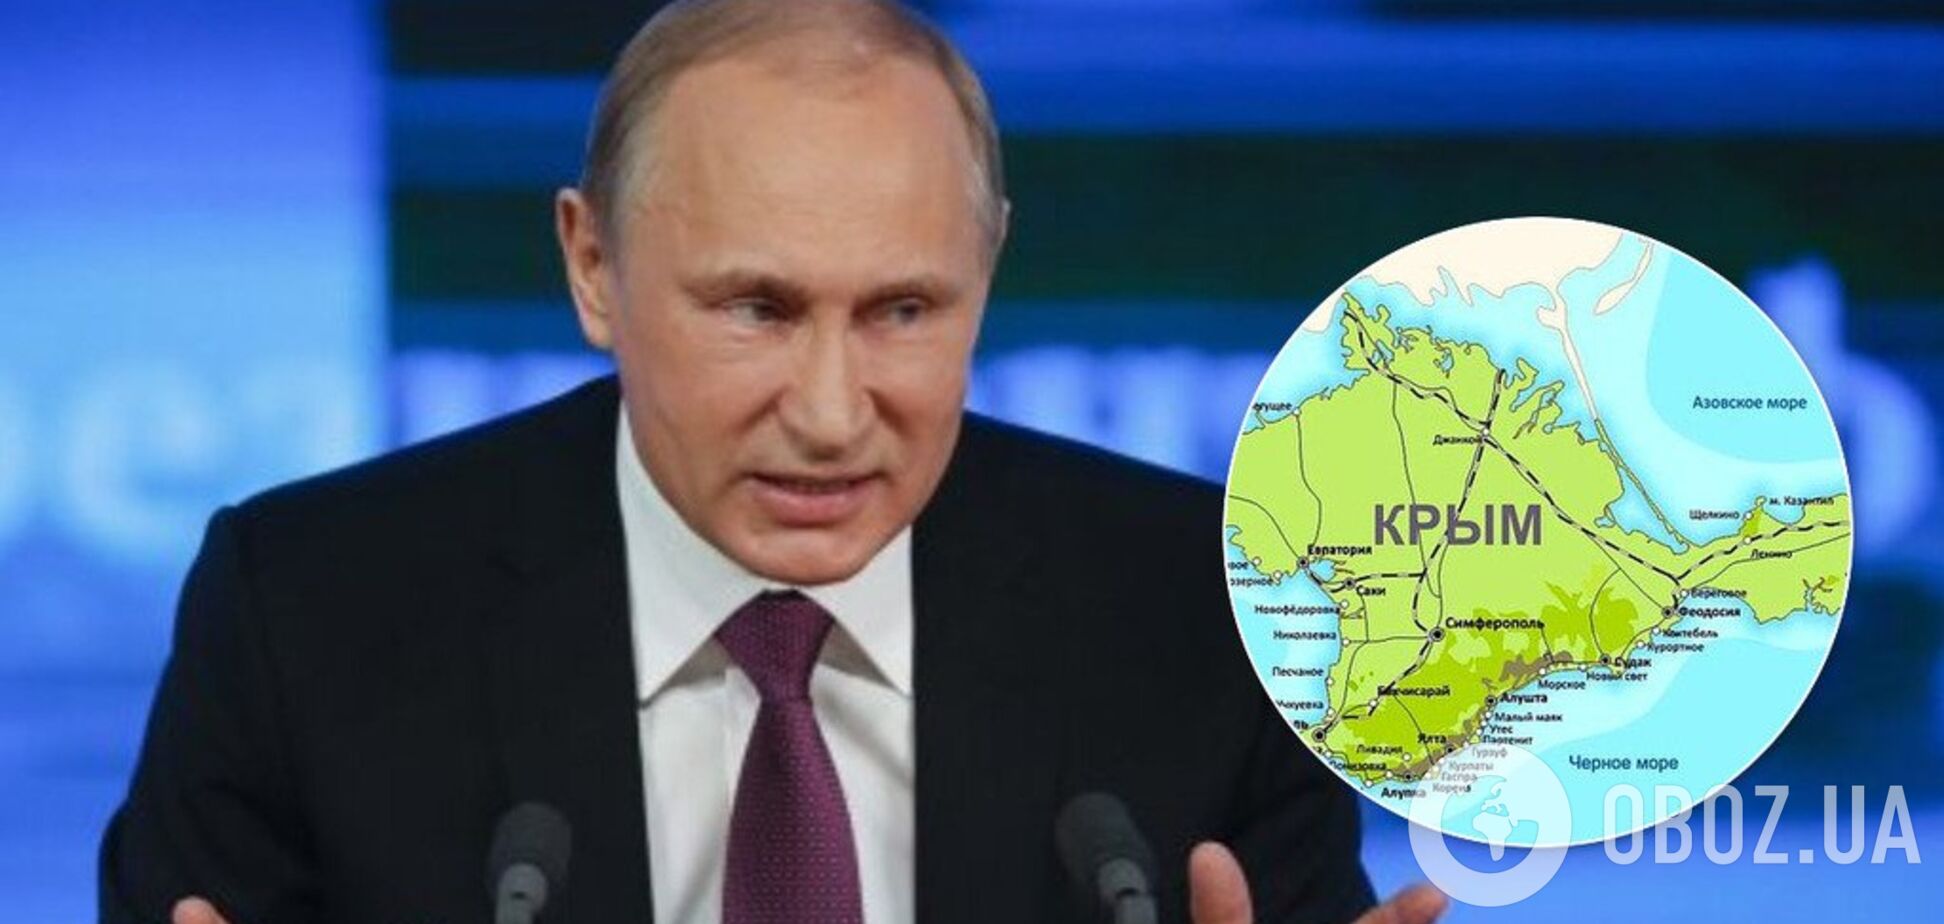 Змінює конституцію РФ: у плані Путіна помітили 'кримський сценарій'